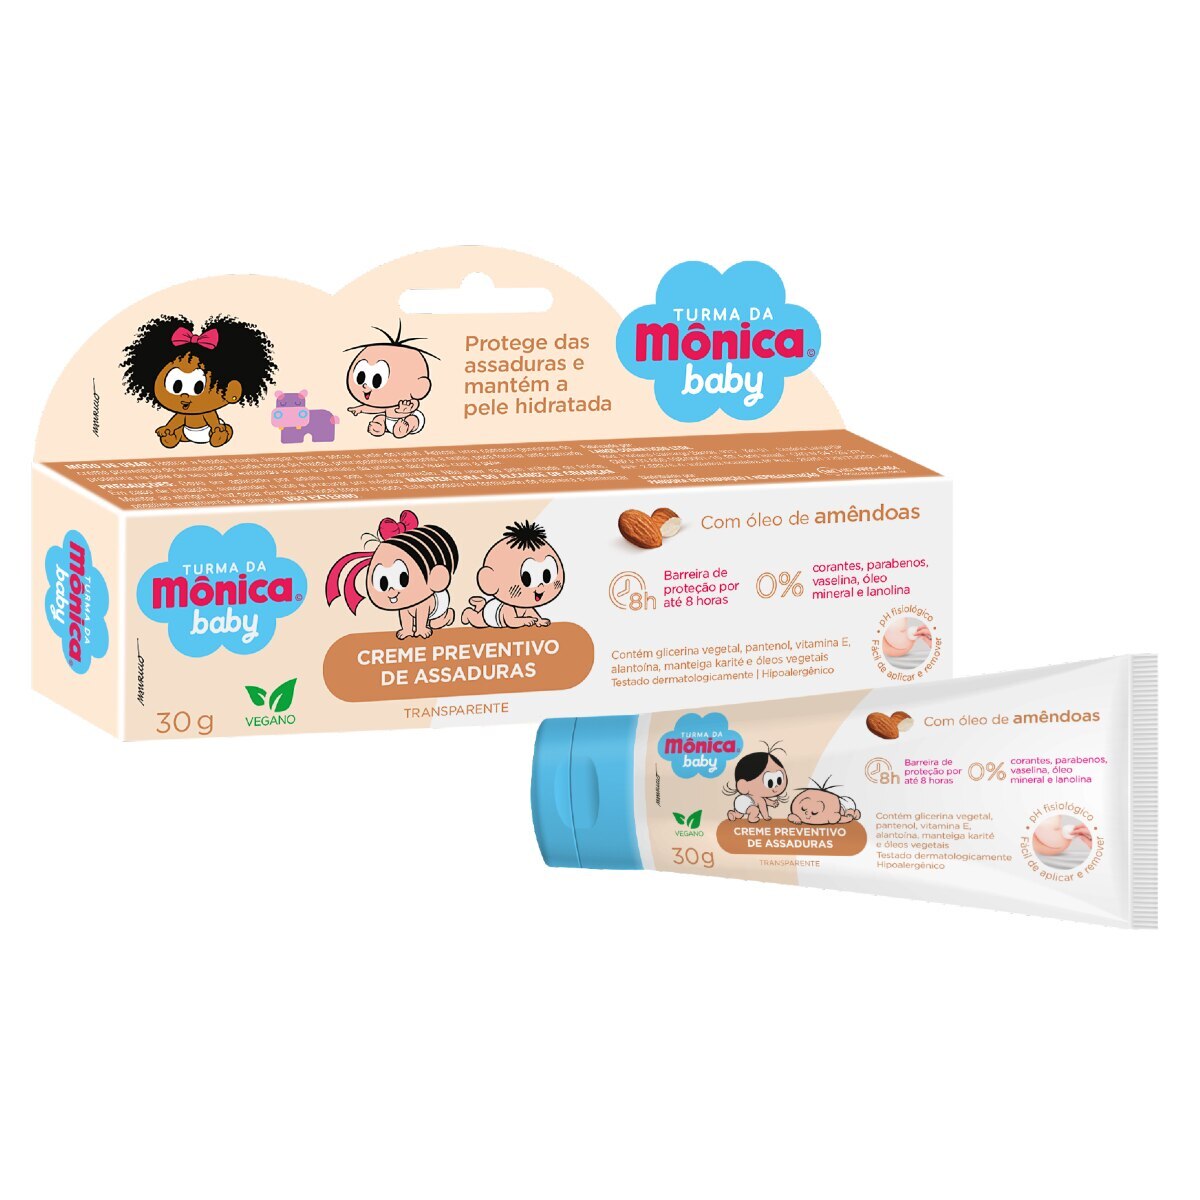 Creme Preventivo de Assaduras Turma da Monica Baby Transparente com Oleo de Amendoas 30g